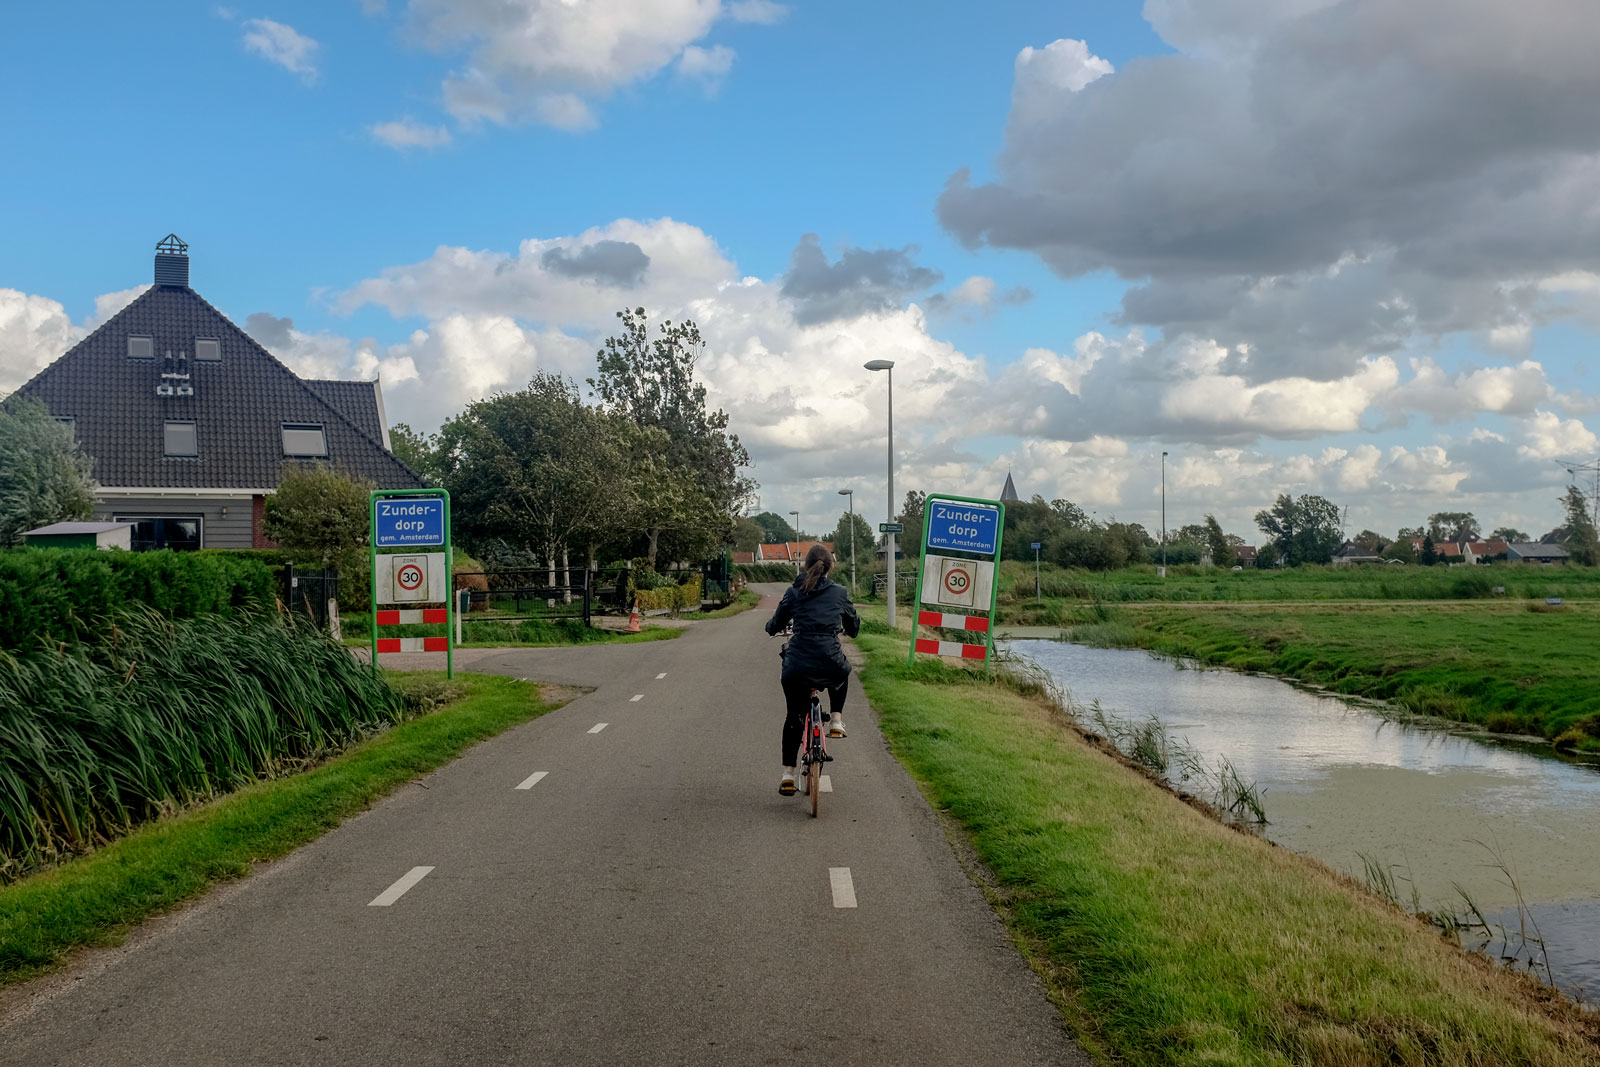 Alyssa bikes past a sign that reads Zunderdorp